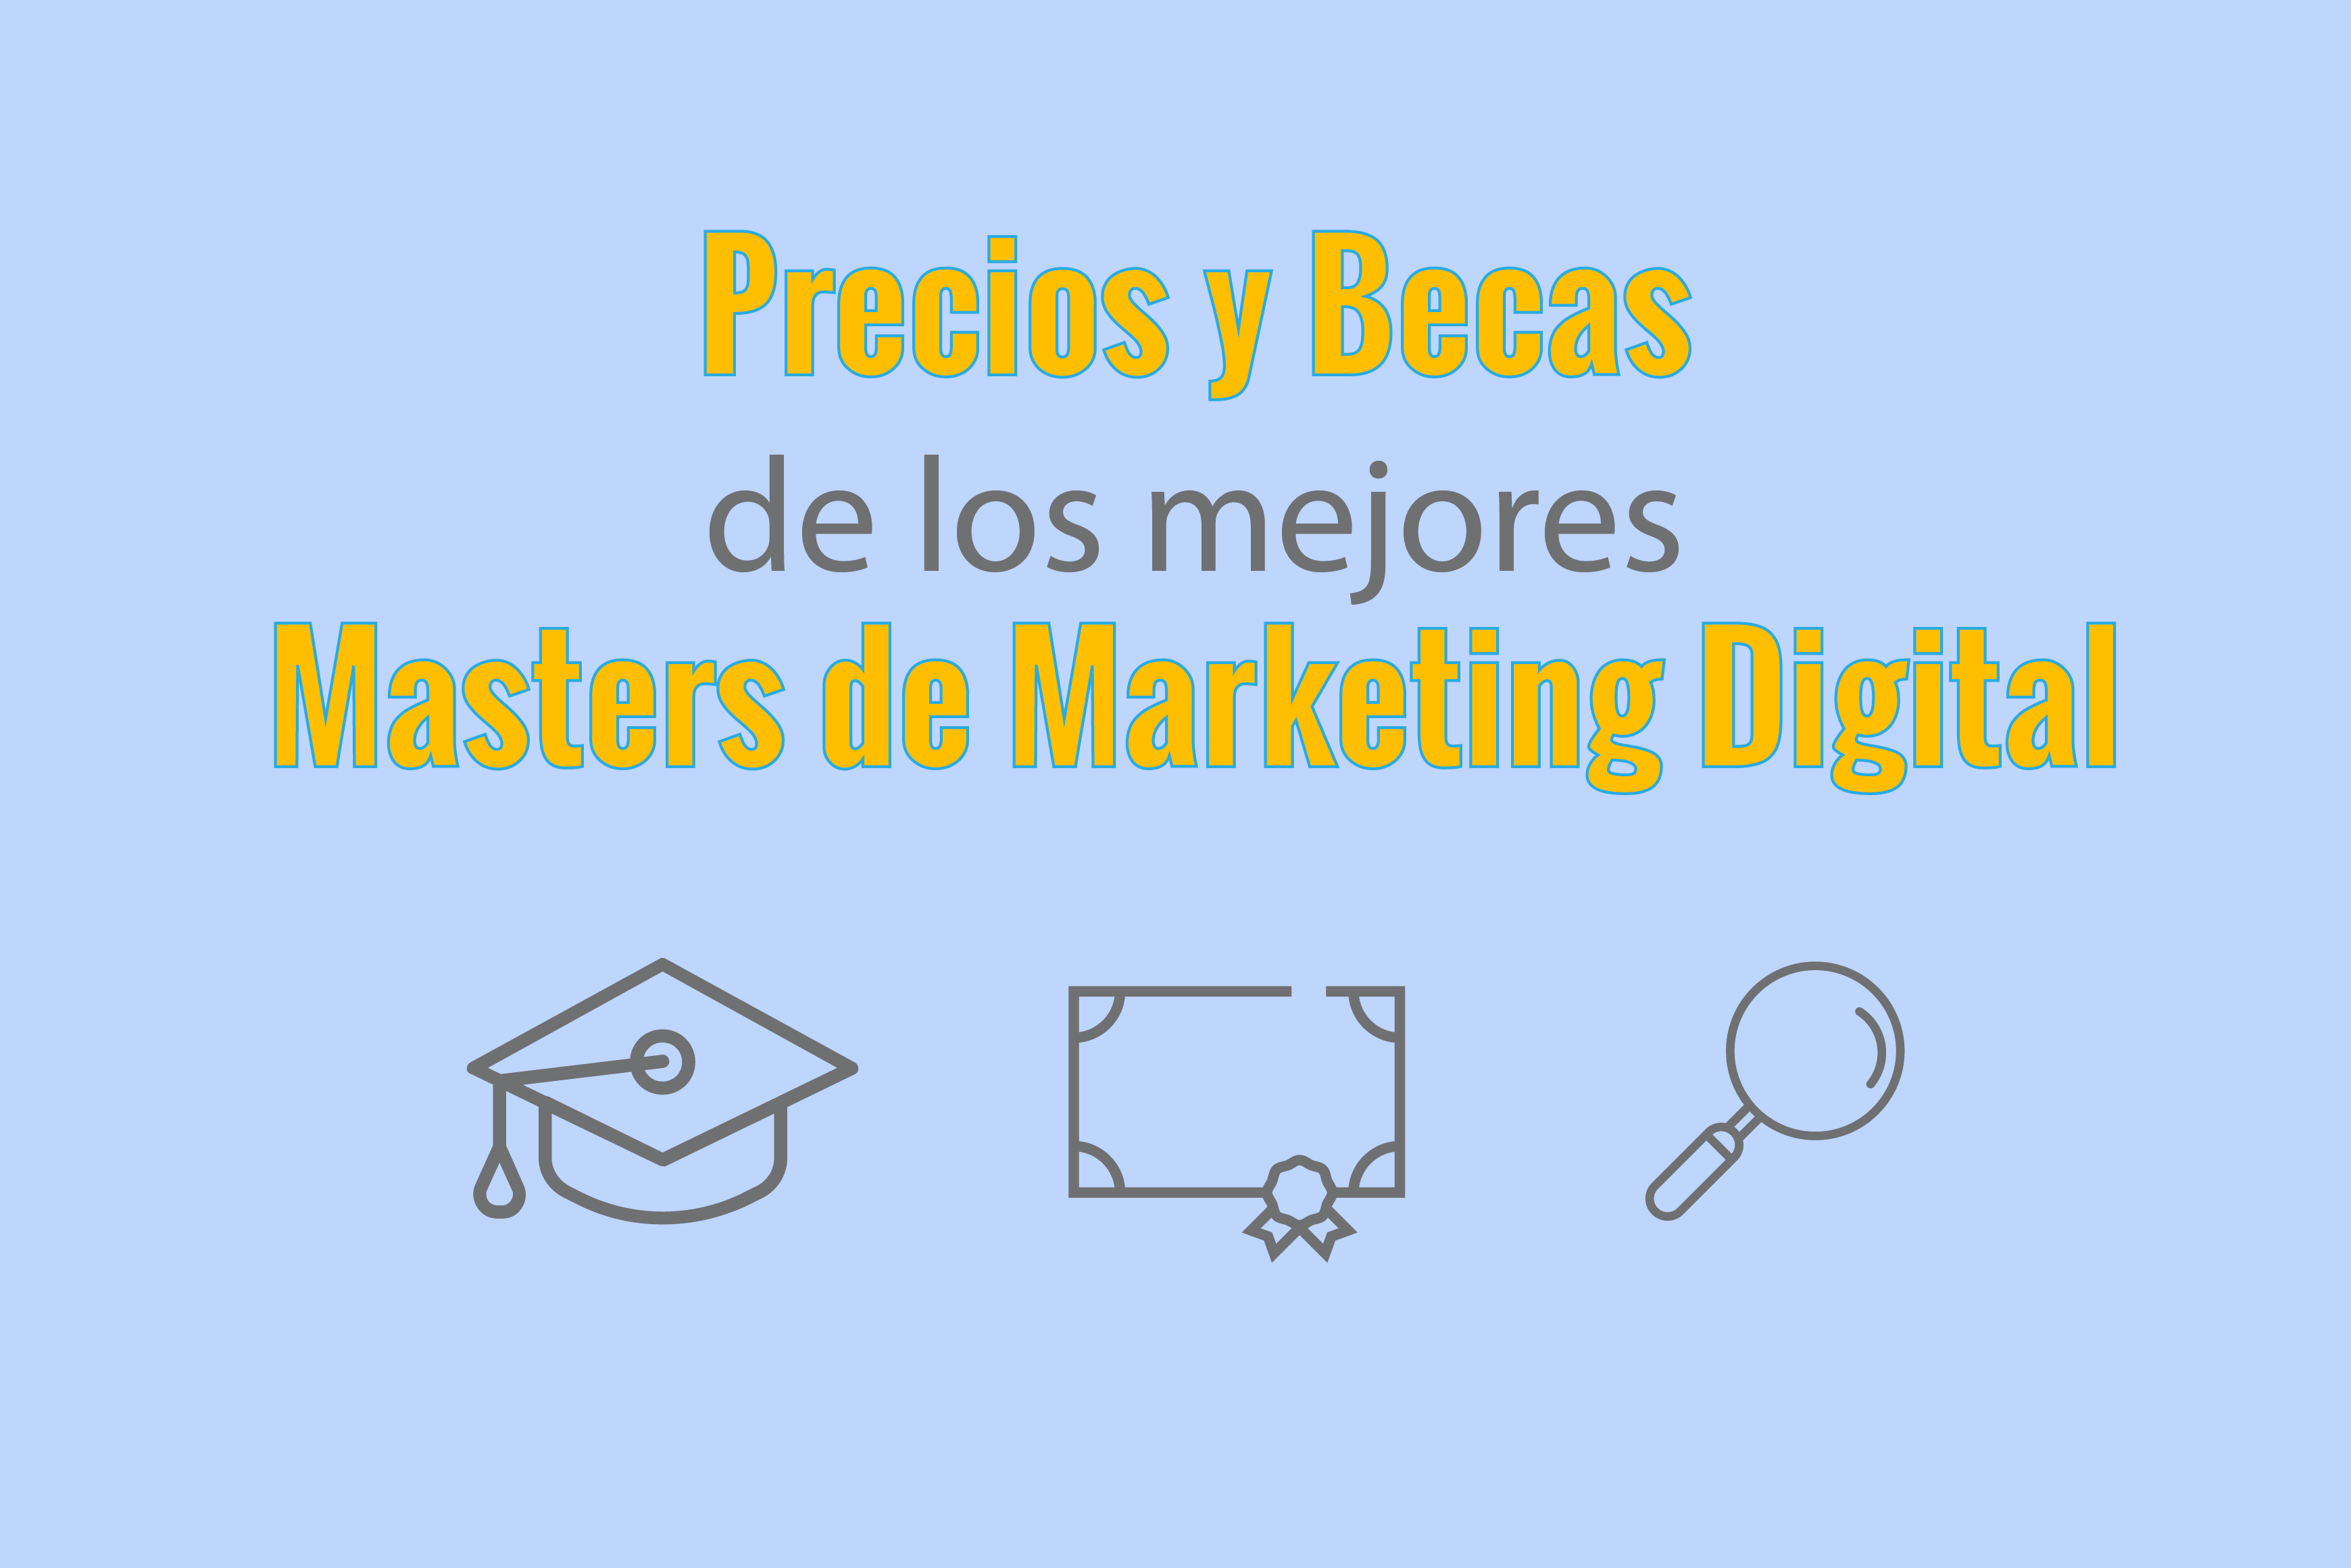 Precios y Becas de los mejores masters de marketing digital